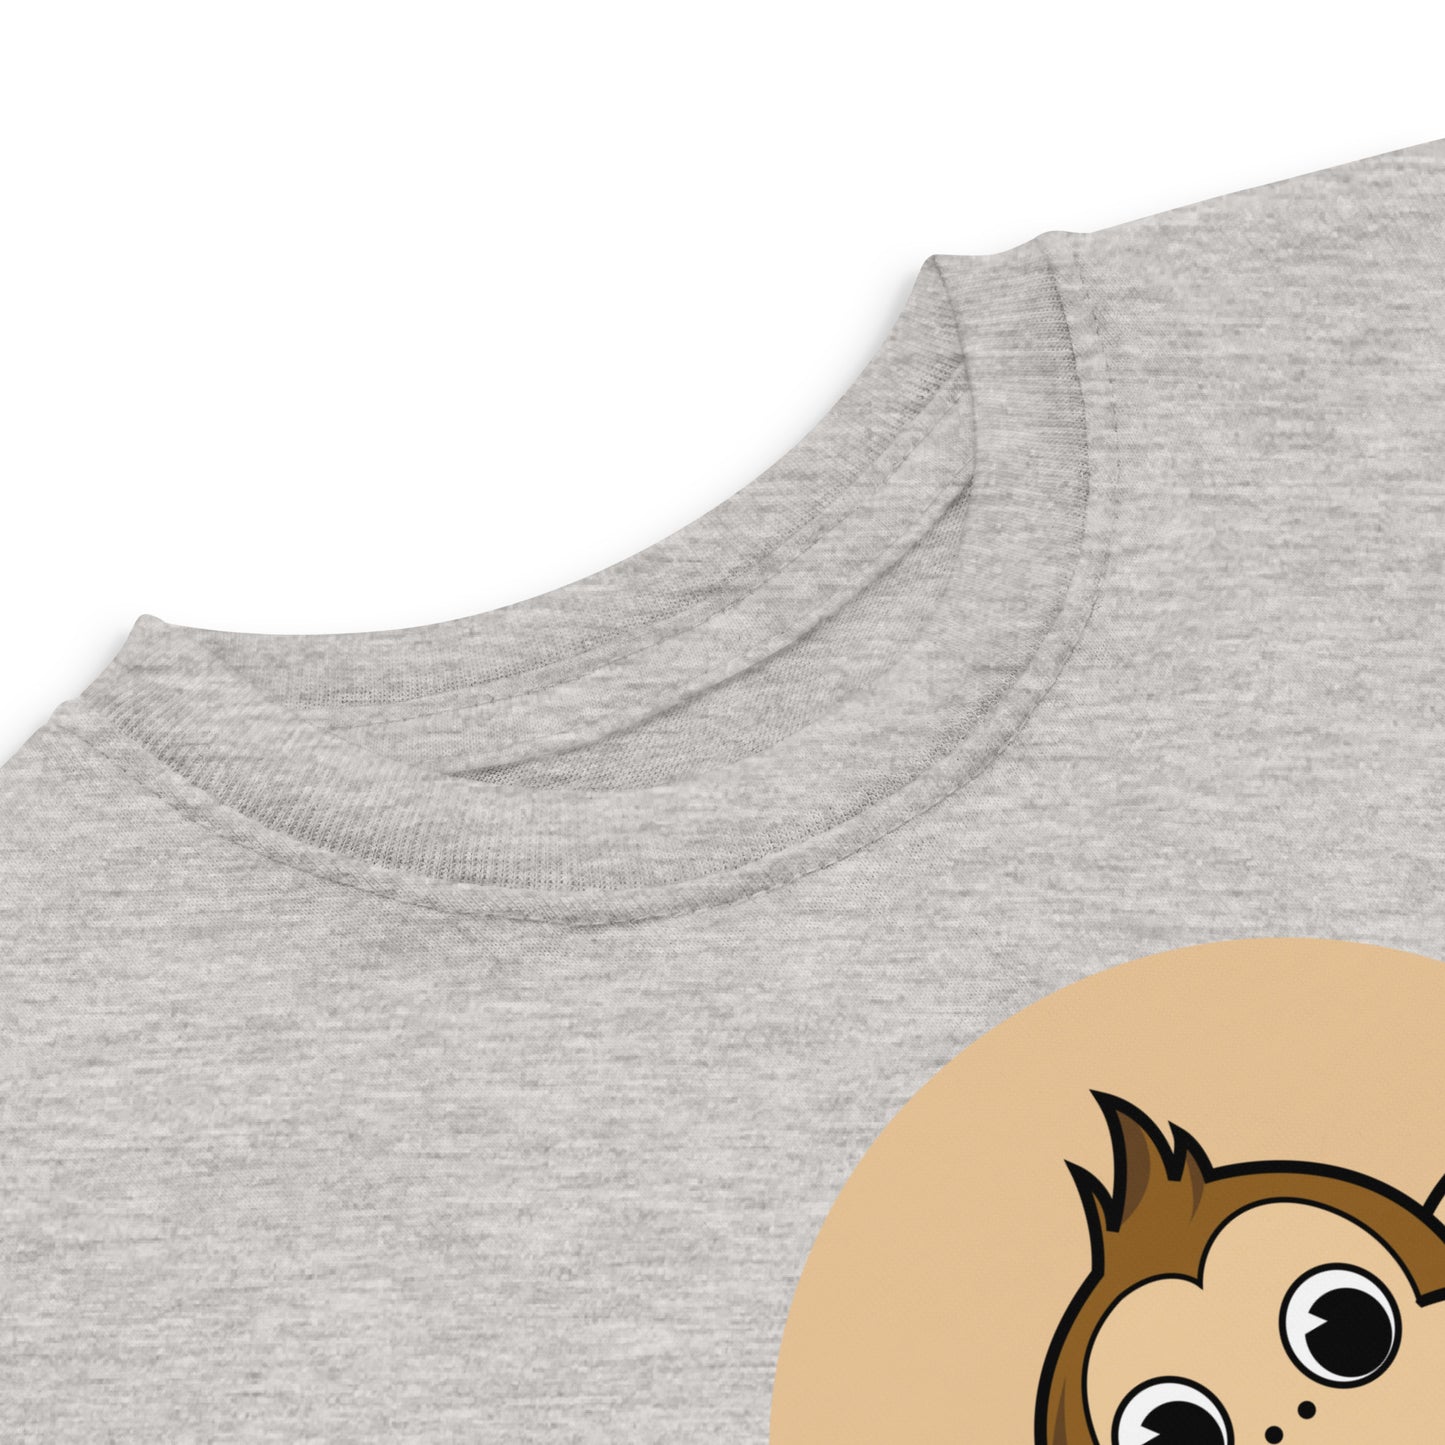 Monkey | Toddler T-Shirt | 2Y-5Y | Grey